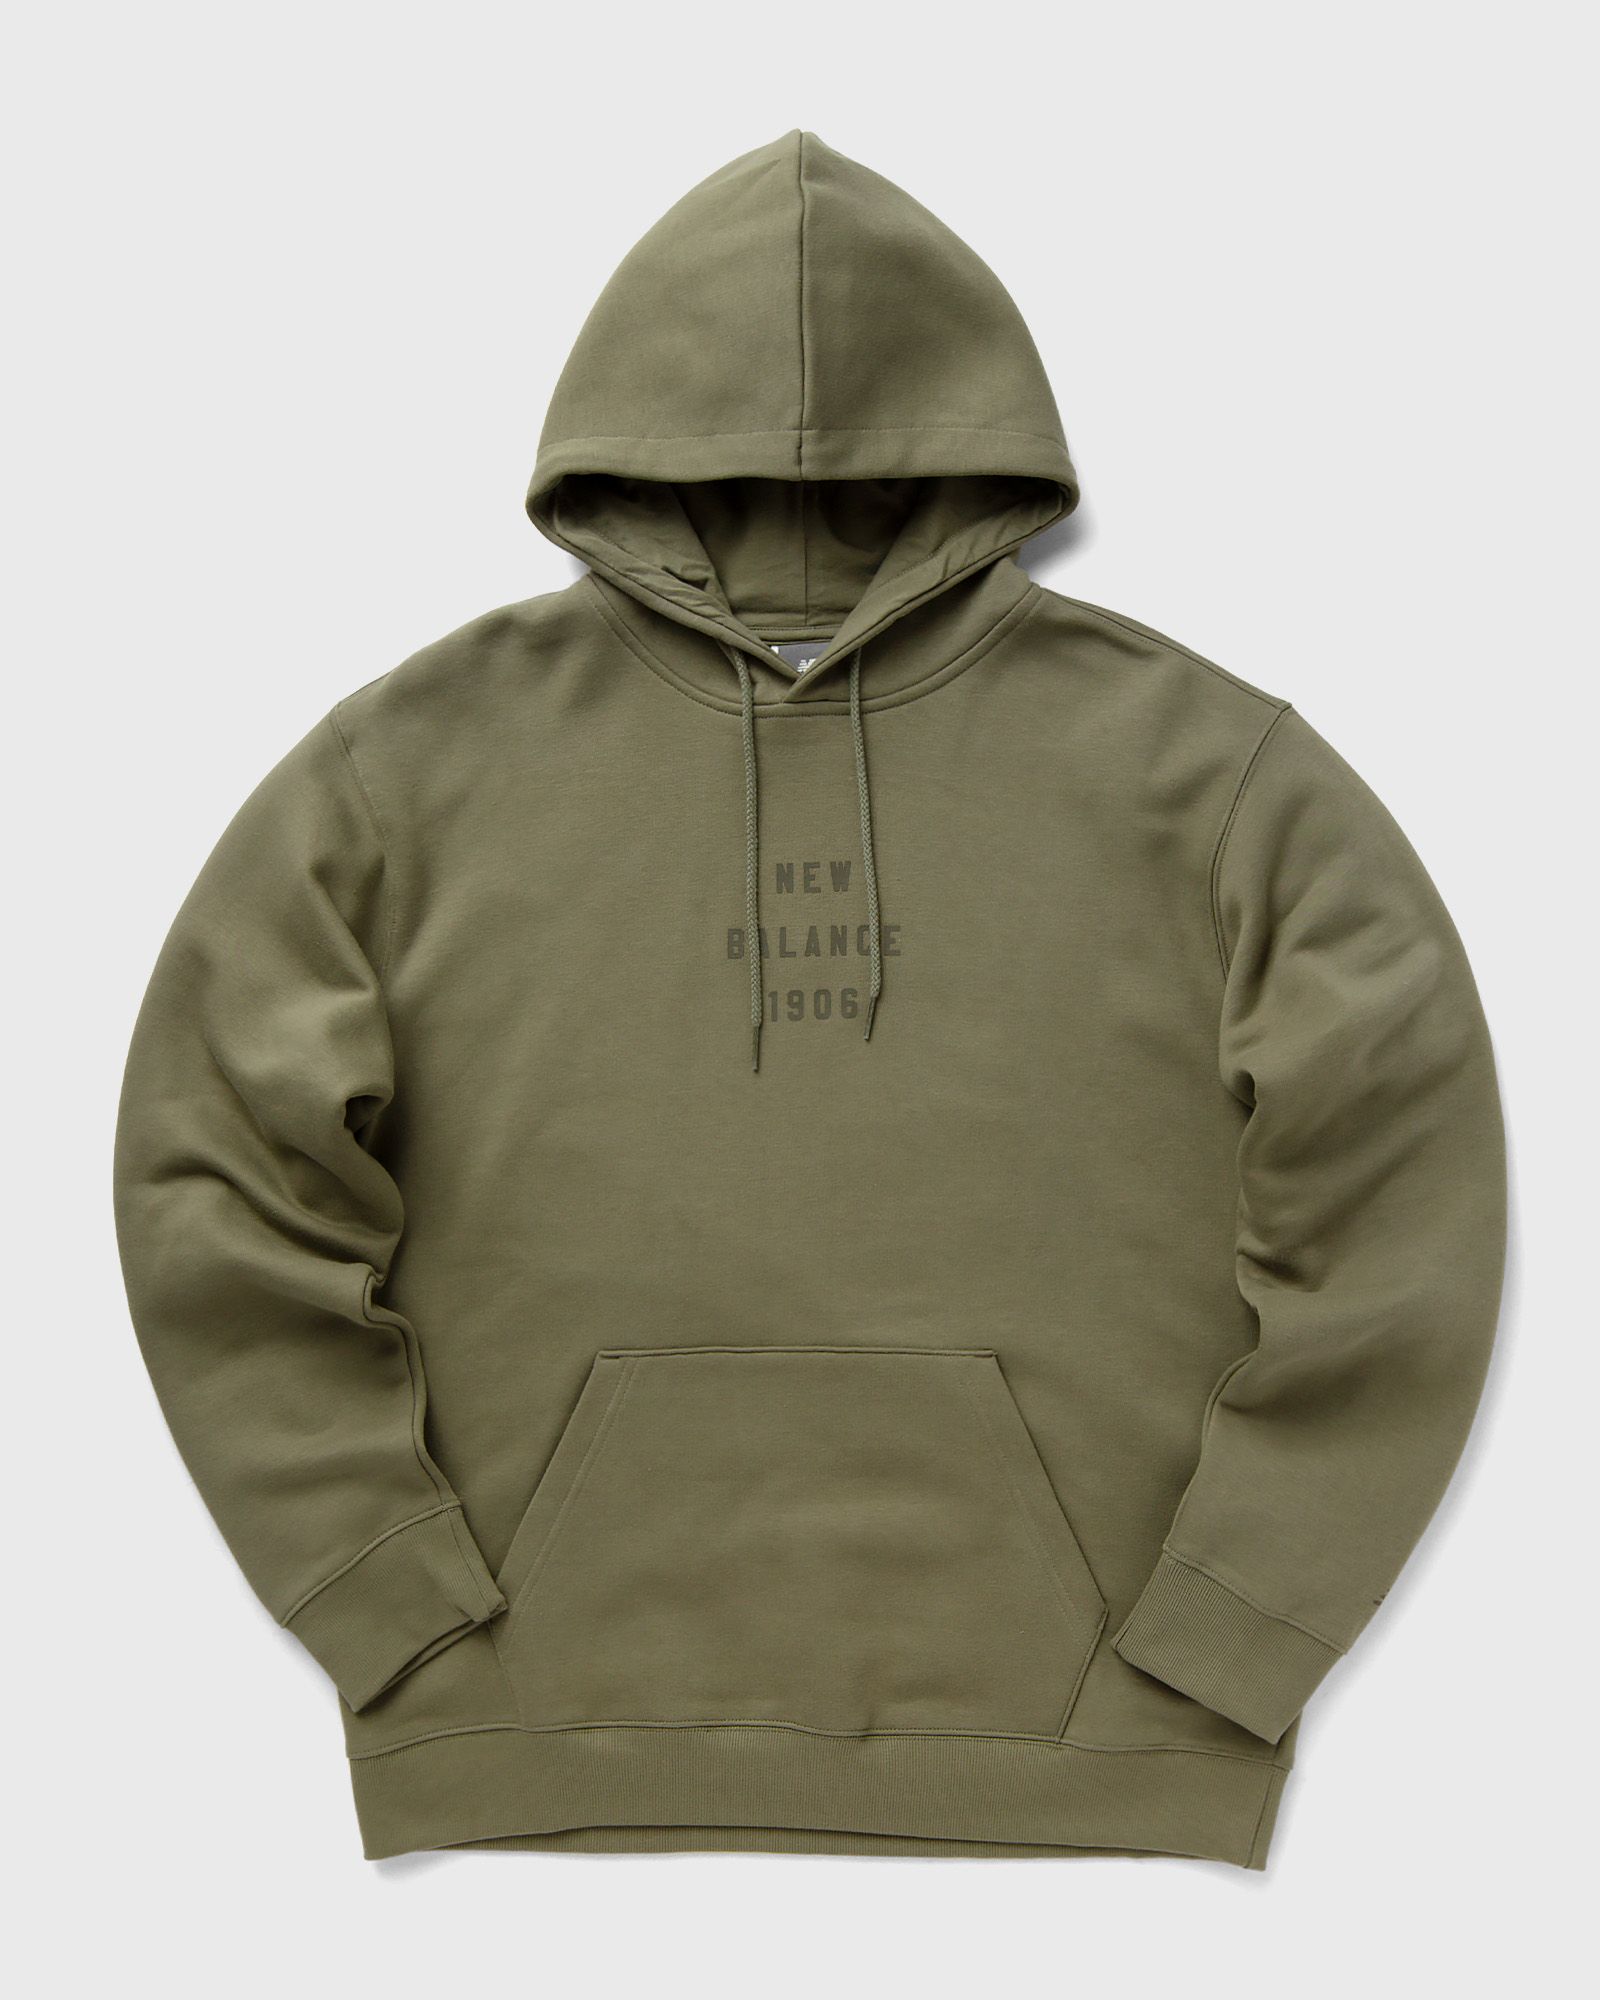 New Balance - graphic hoodie men hoodies green in größe:xxl